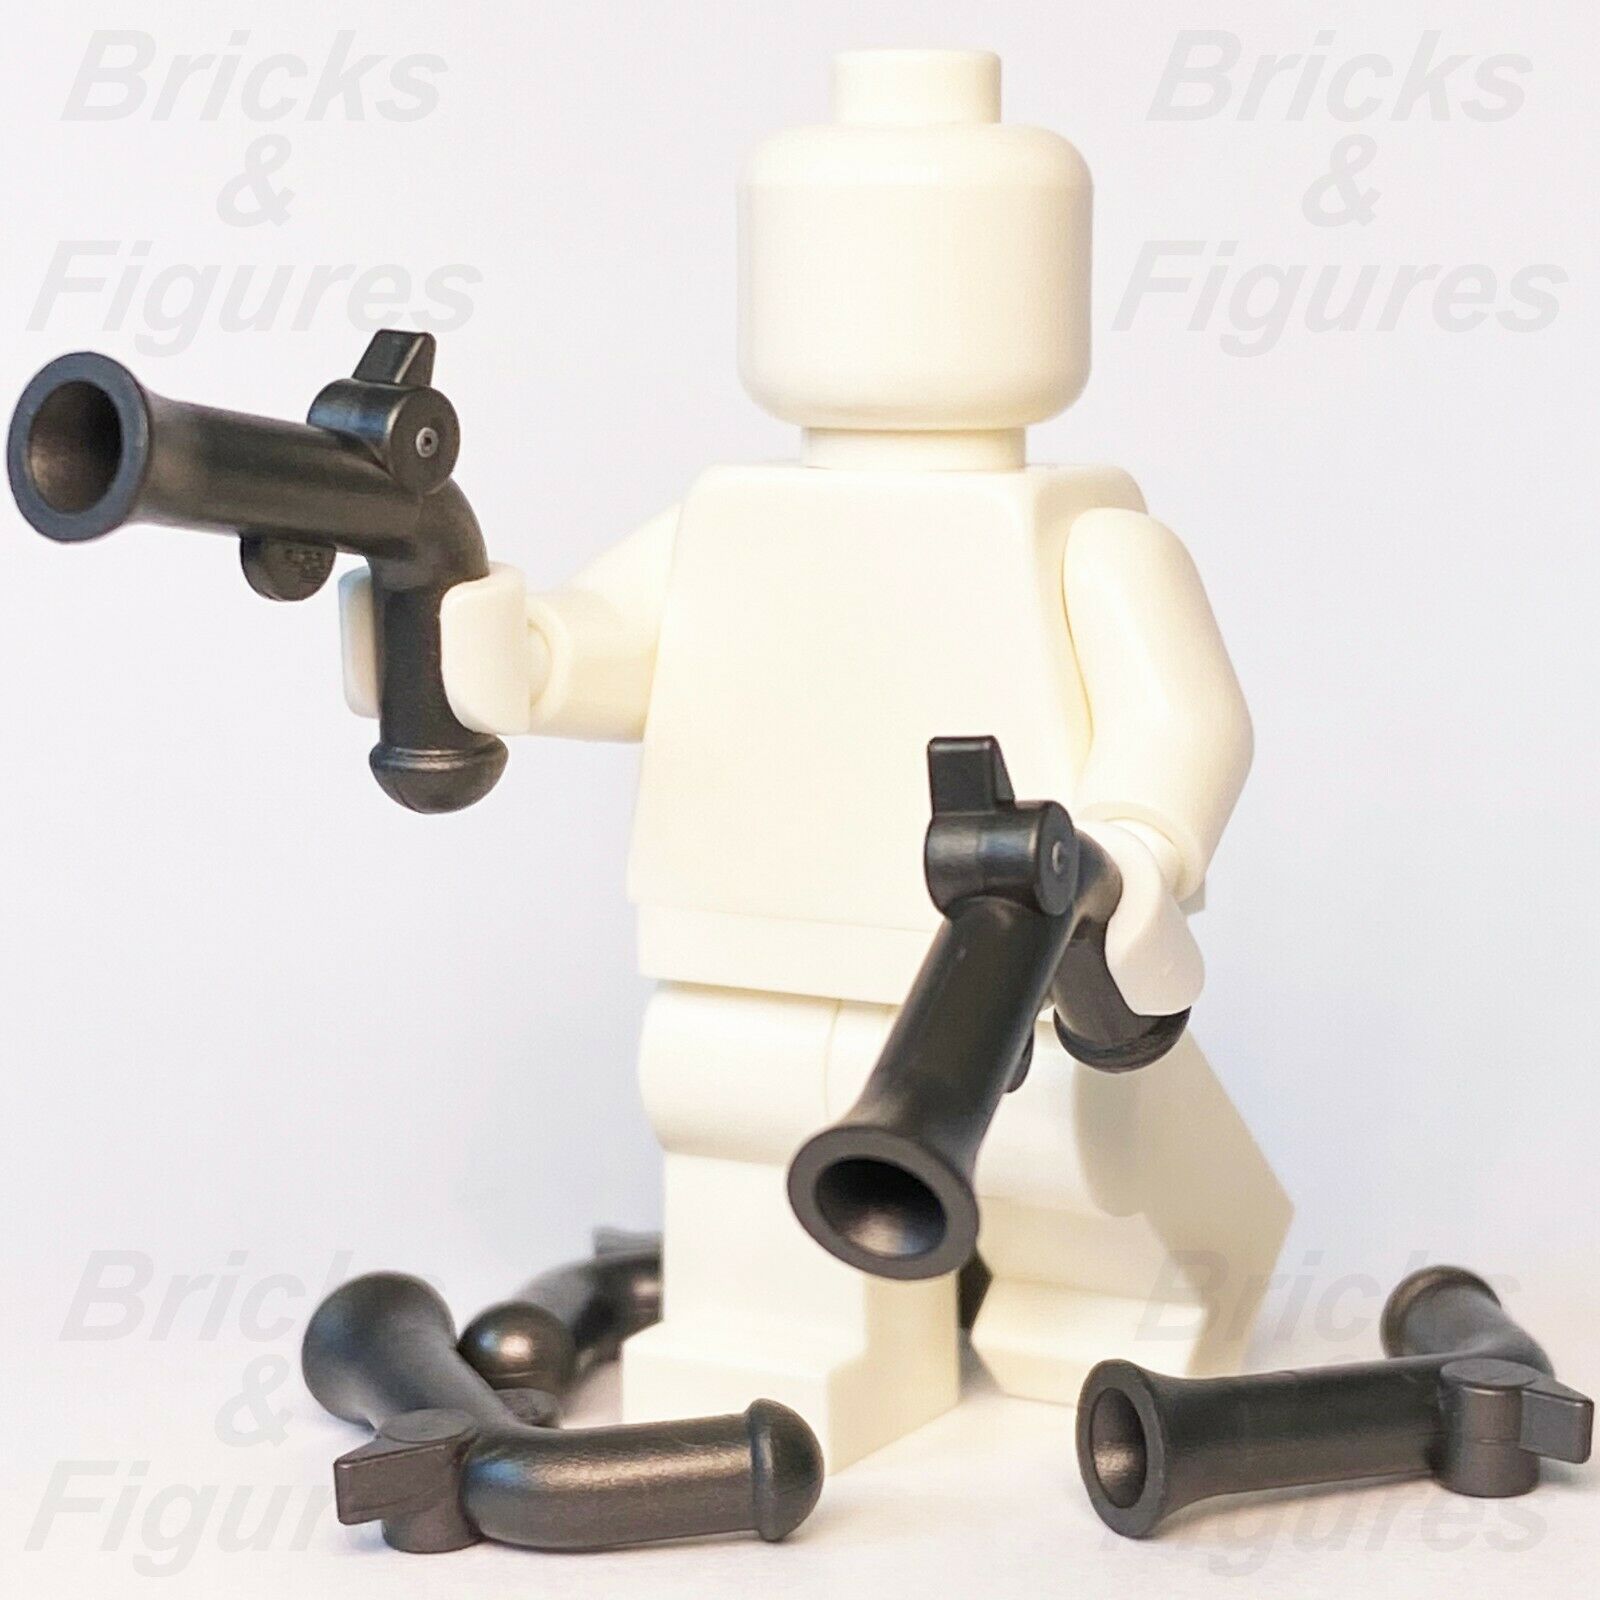 5 x Pirates LEGO パール ダークグレー フリントロック ピストルガン ミニフィギュア 武器パーツ